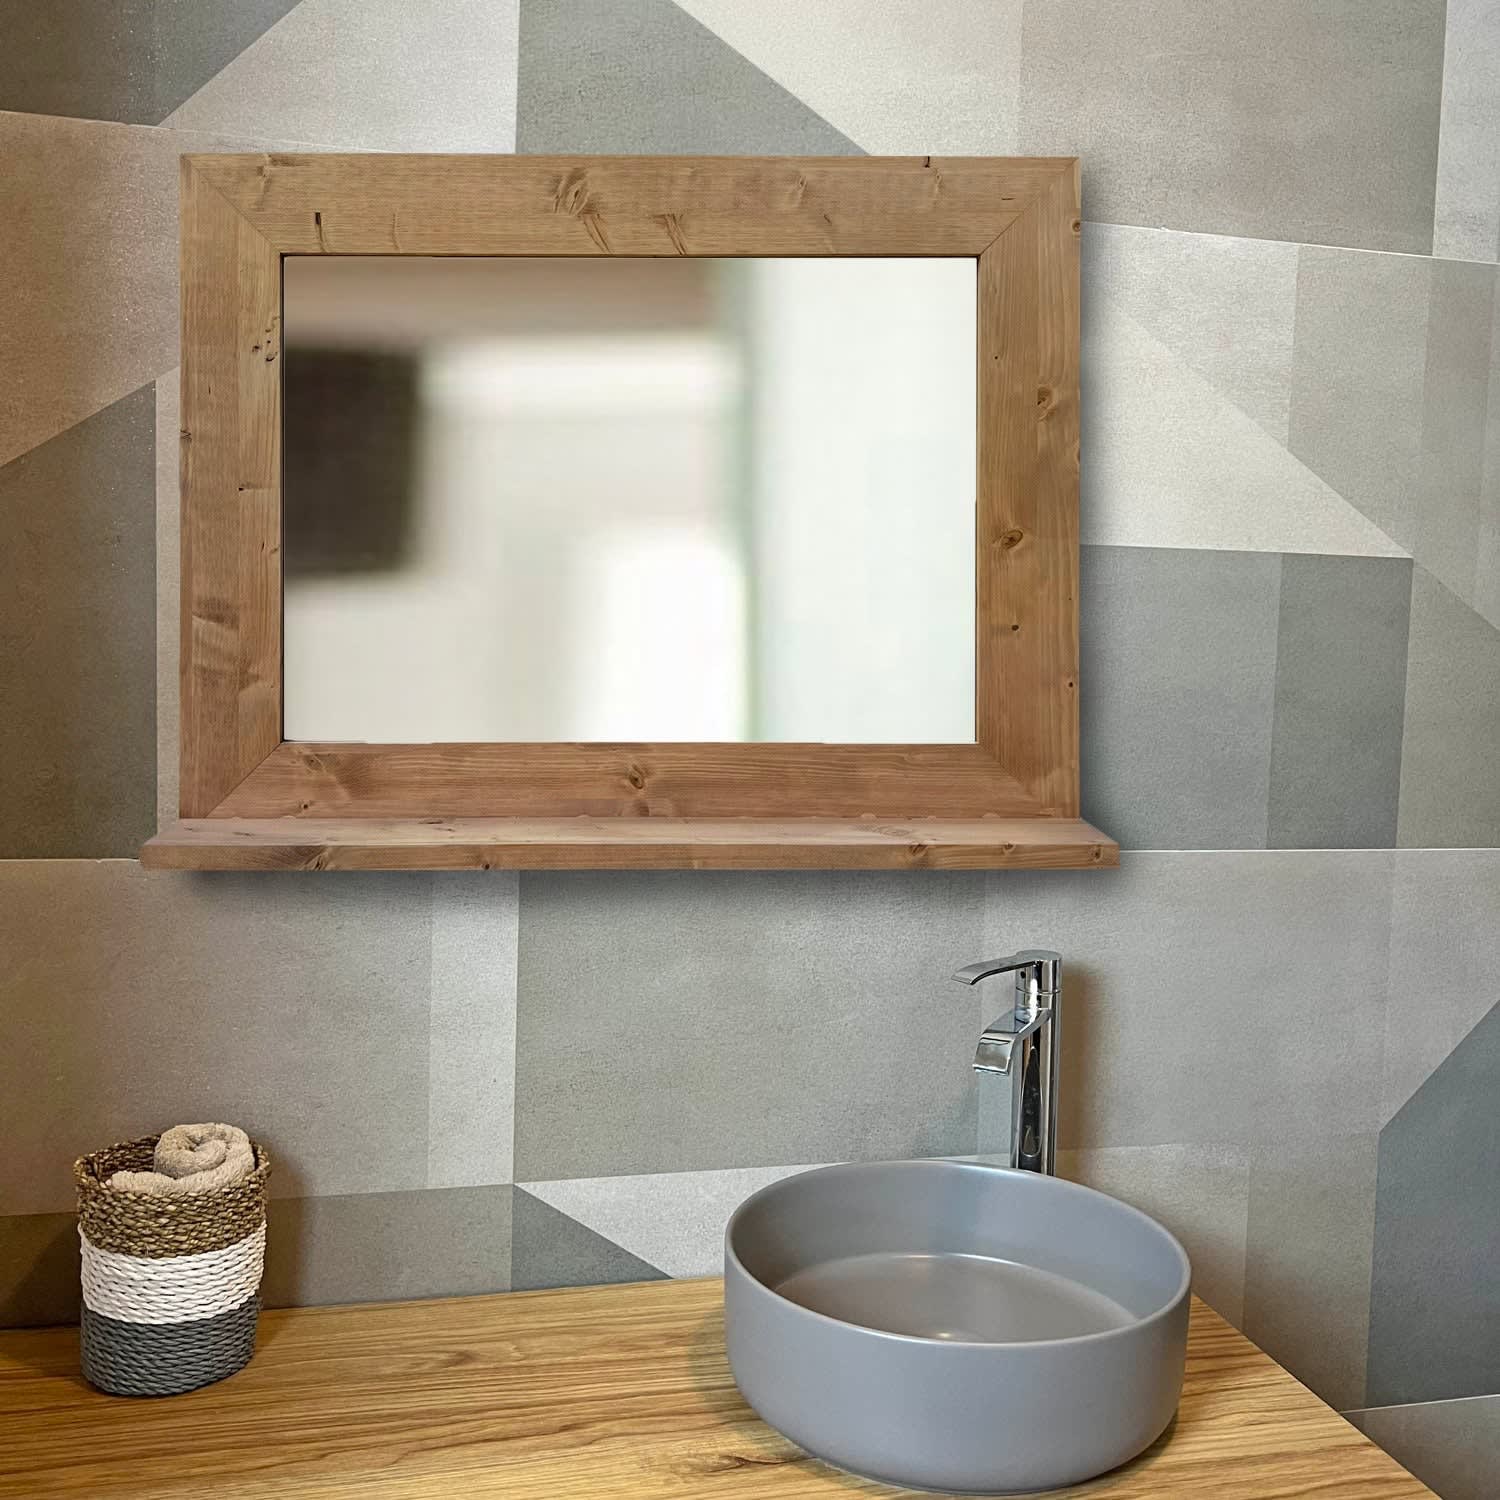 Espejo de pared de madera maciza con balda en tono roble 88x68cm Natay